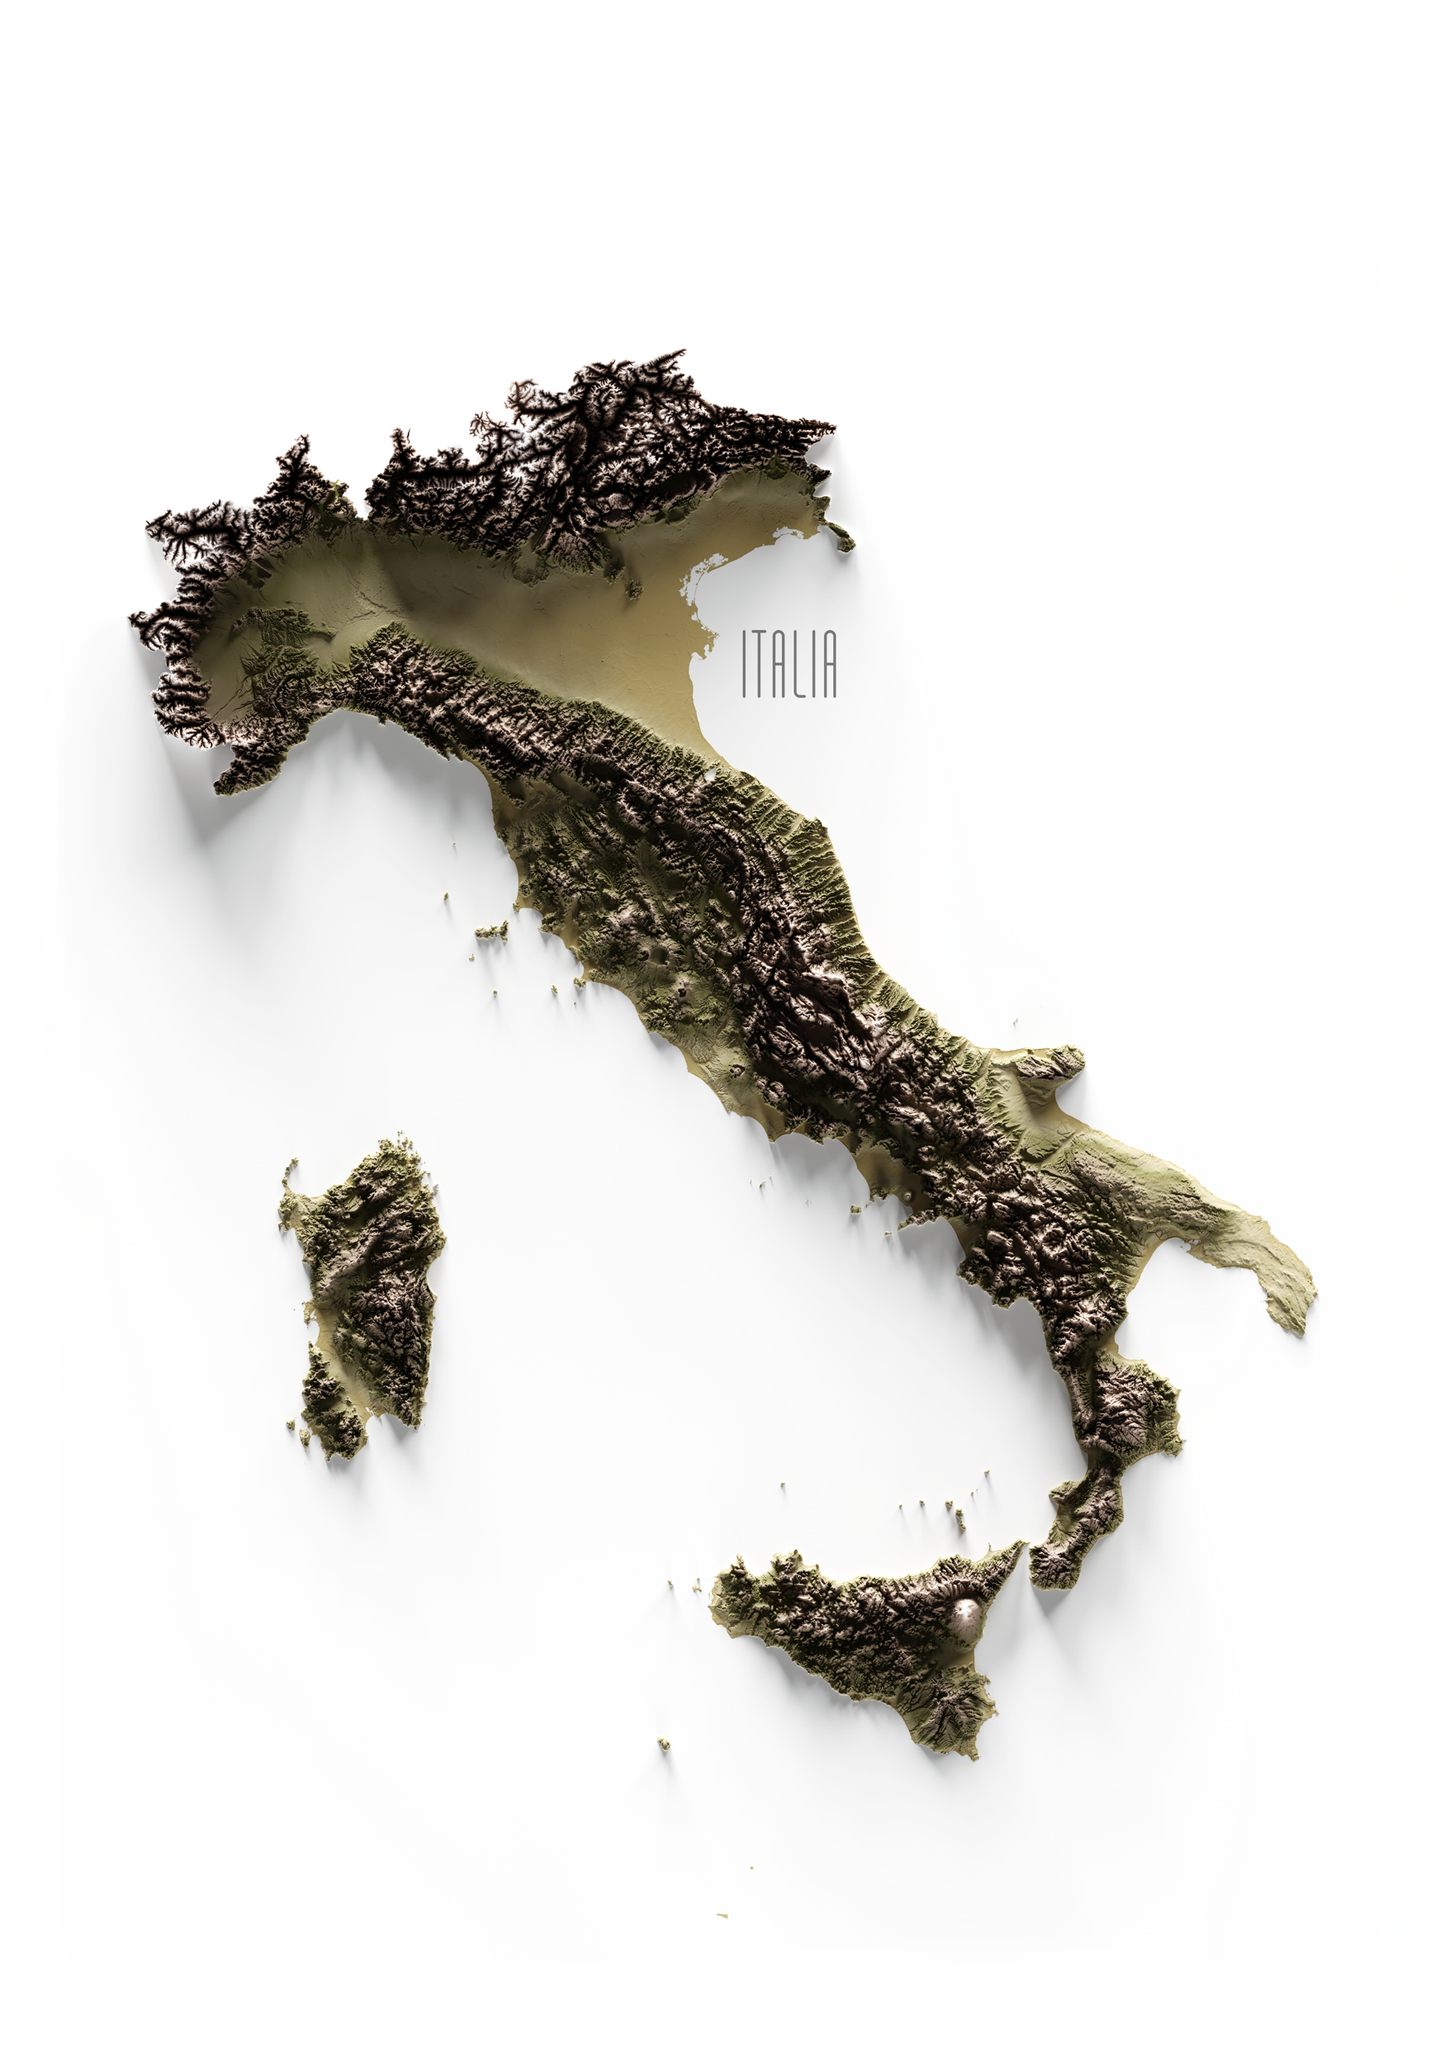 ITALIA. Mapa de relieve en colores terrosos.